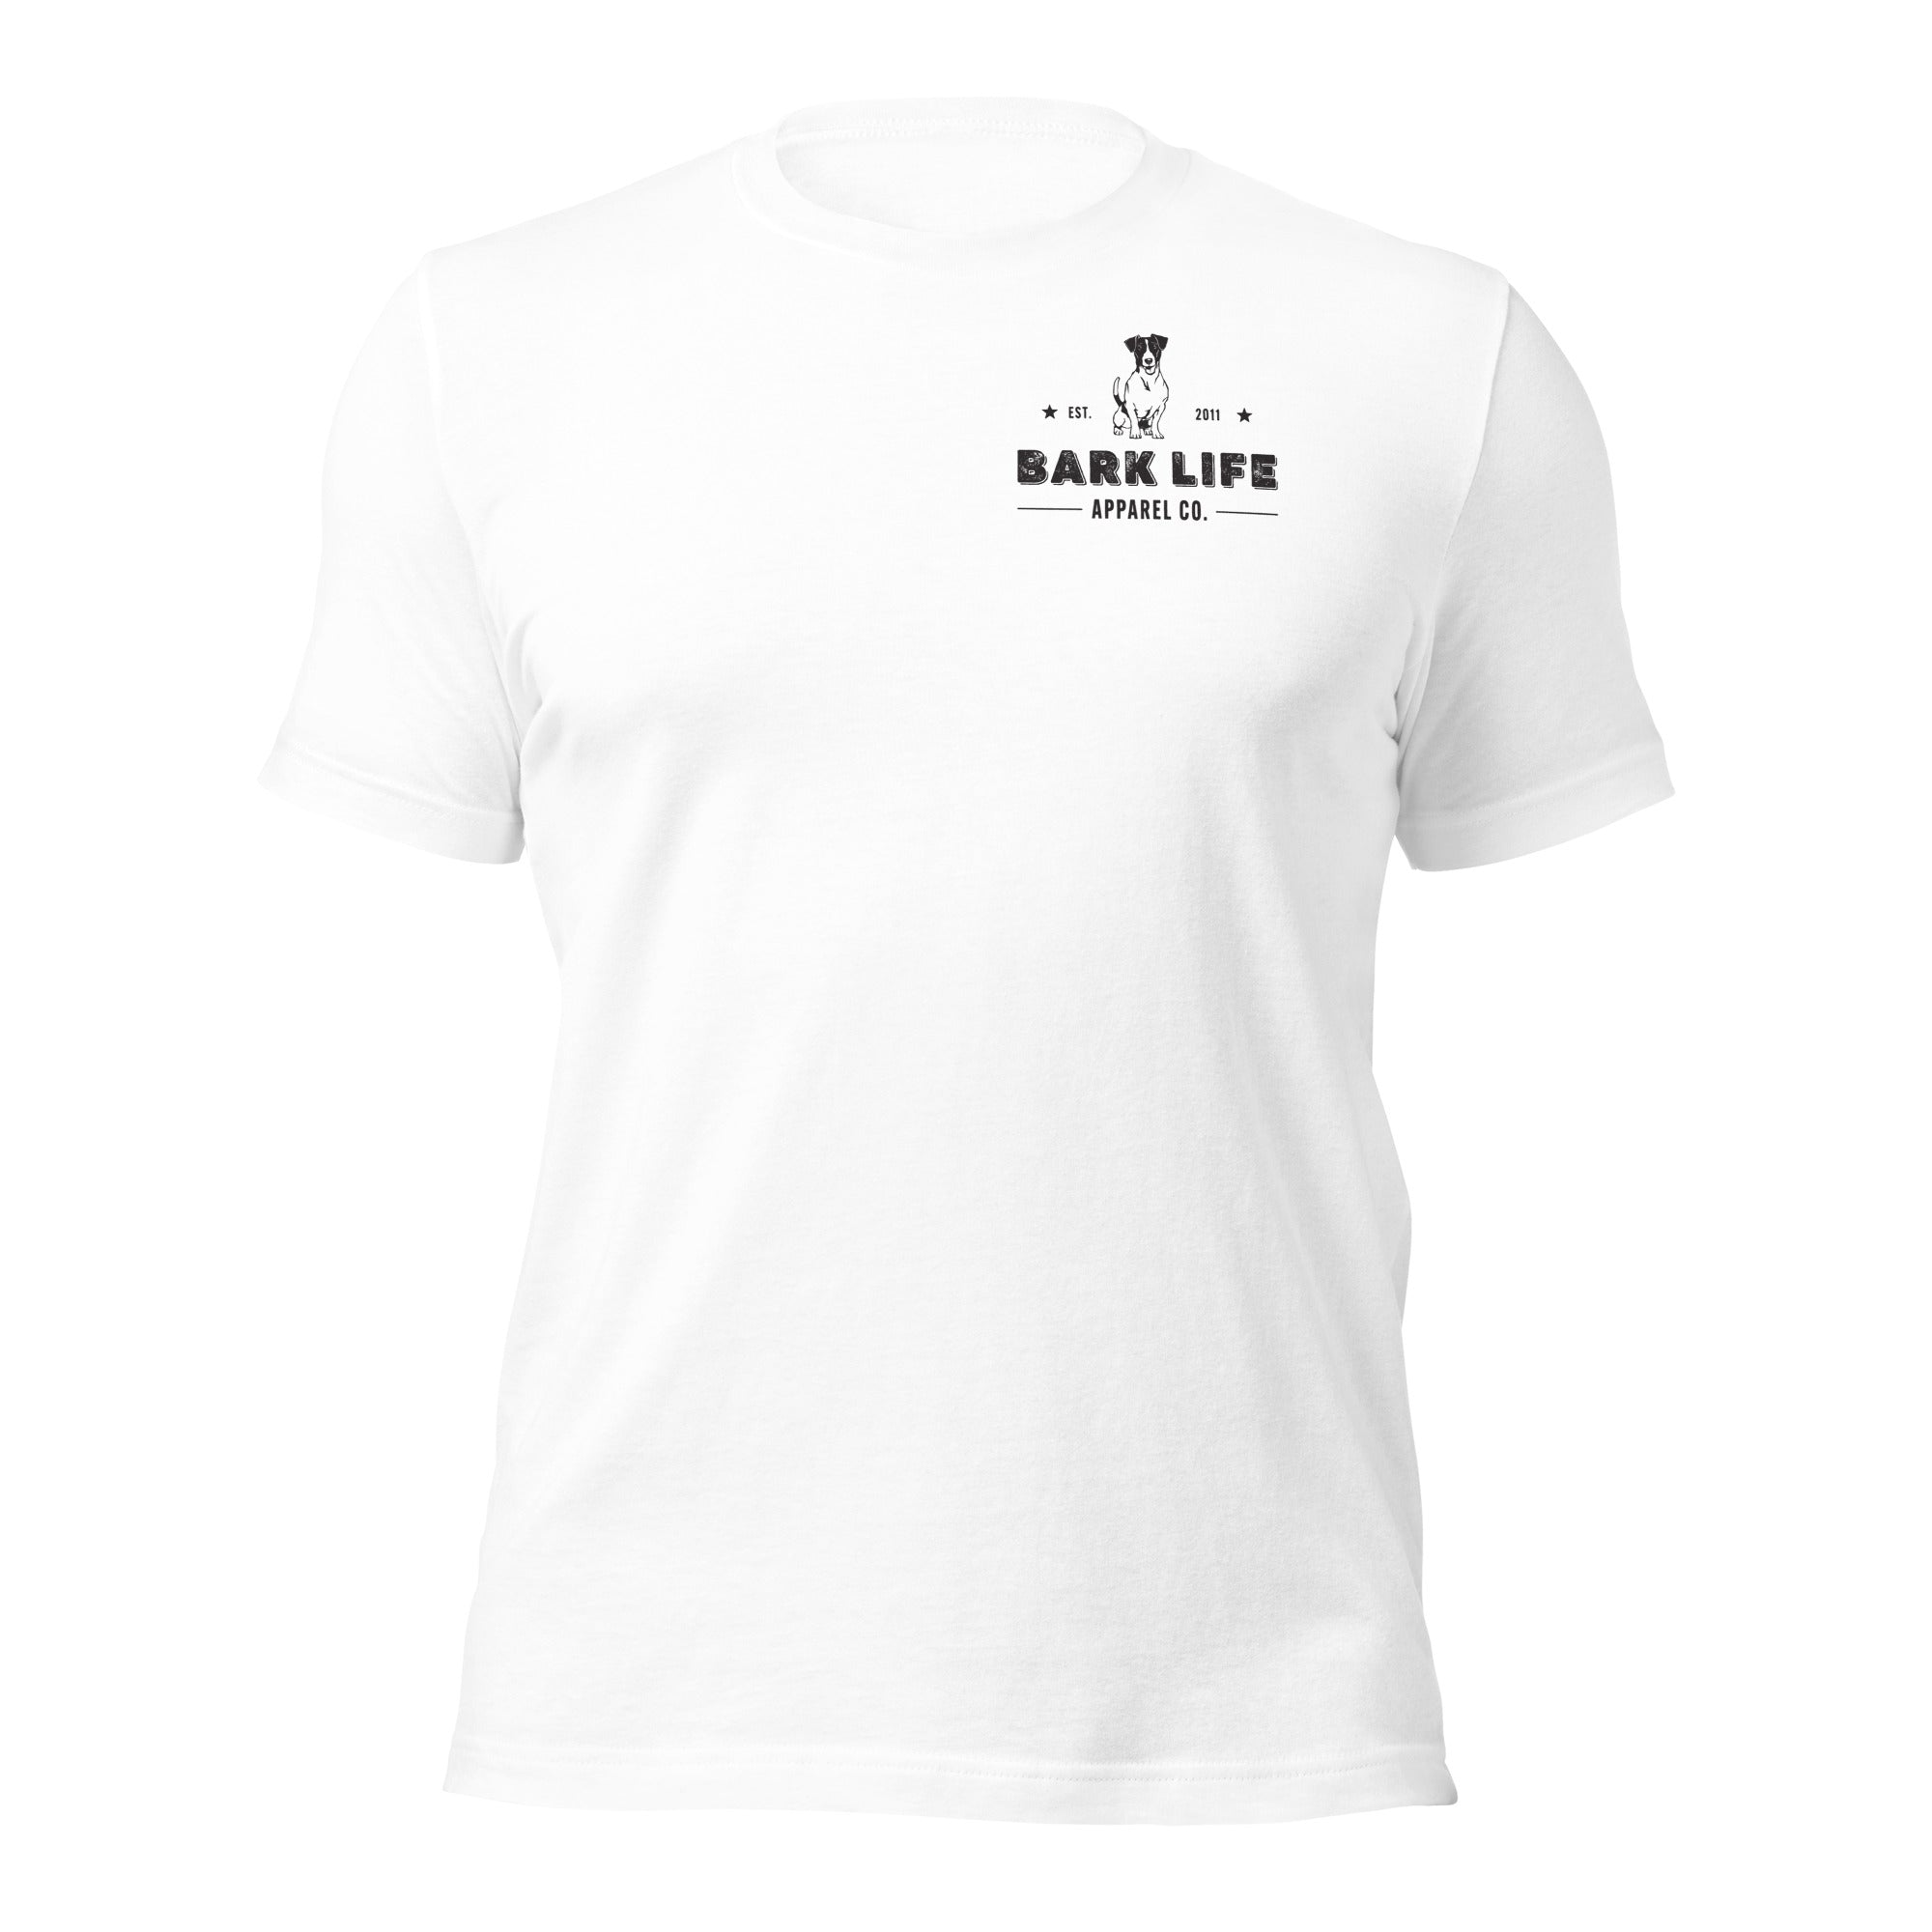 Jack Russell Terrier - Short Sleeve Cotton Tee  Shirt